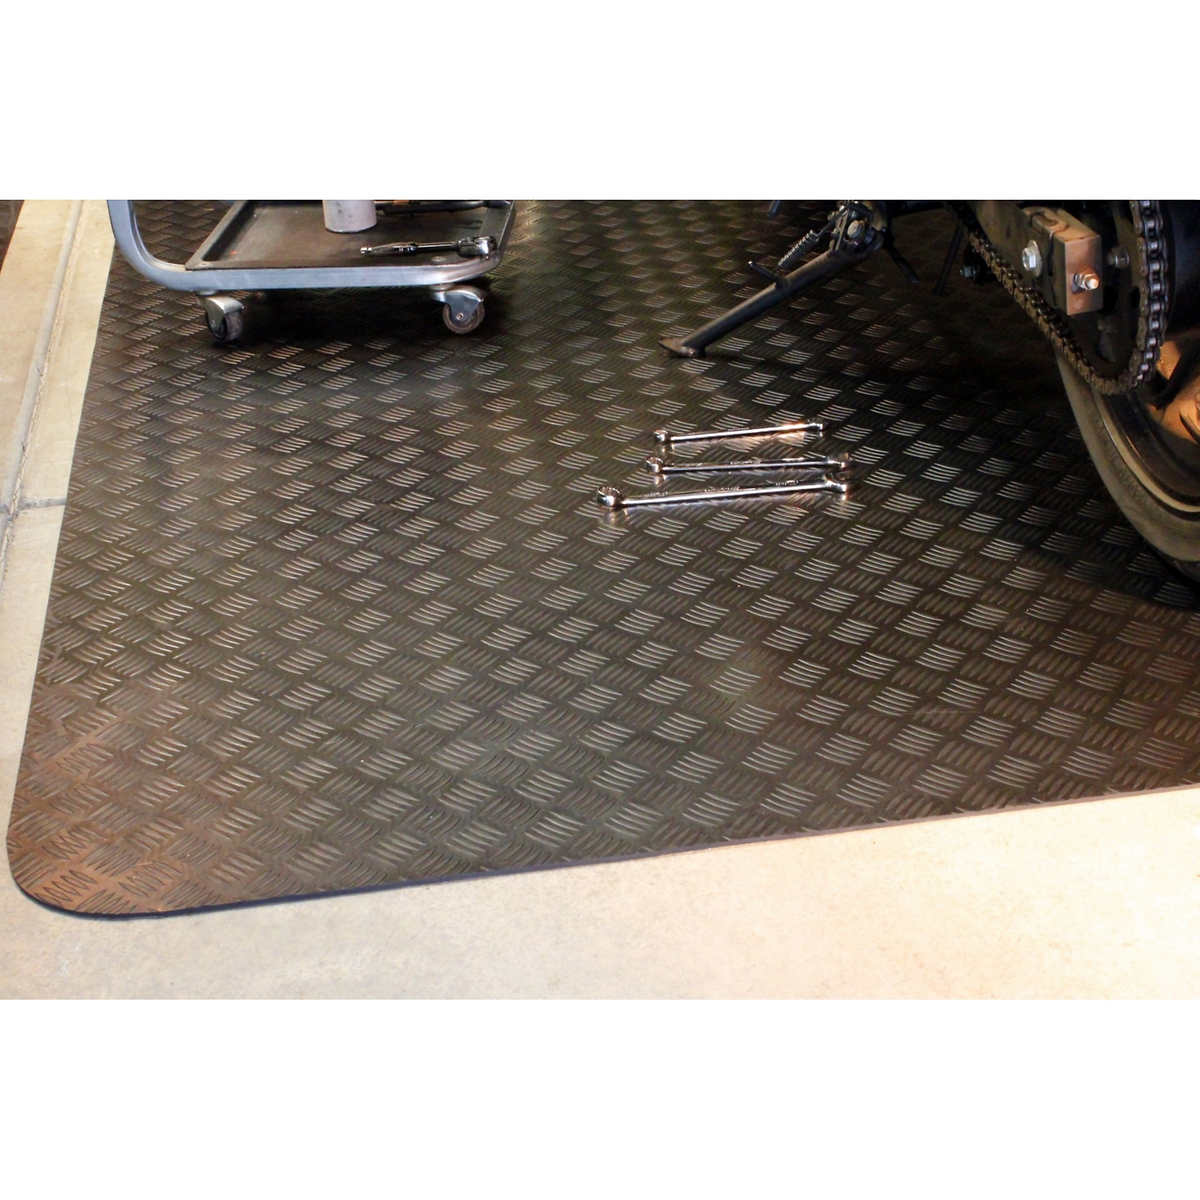 Coverguard 5 X 7 Garage Floor Rubber Mat